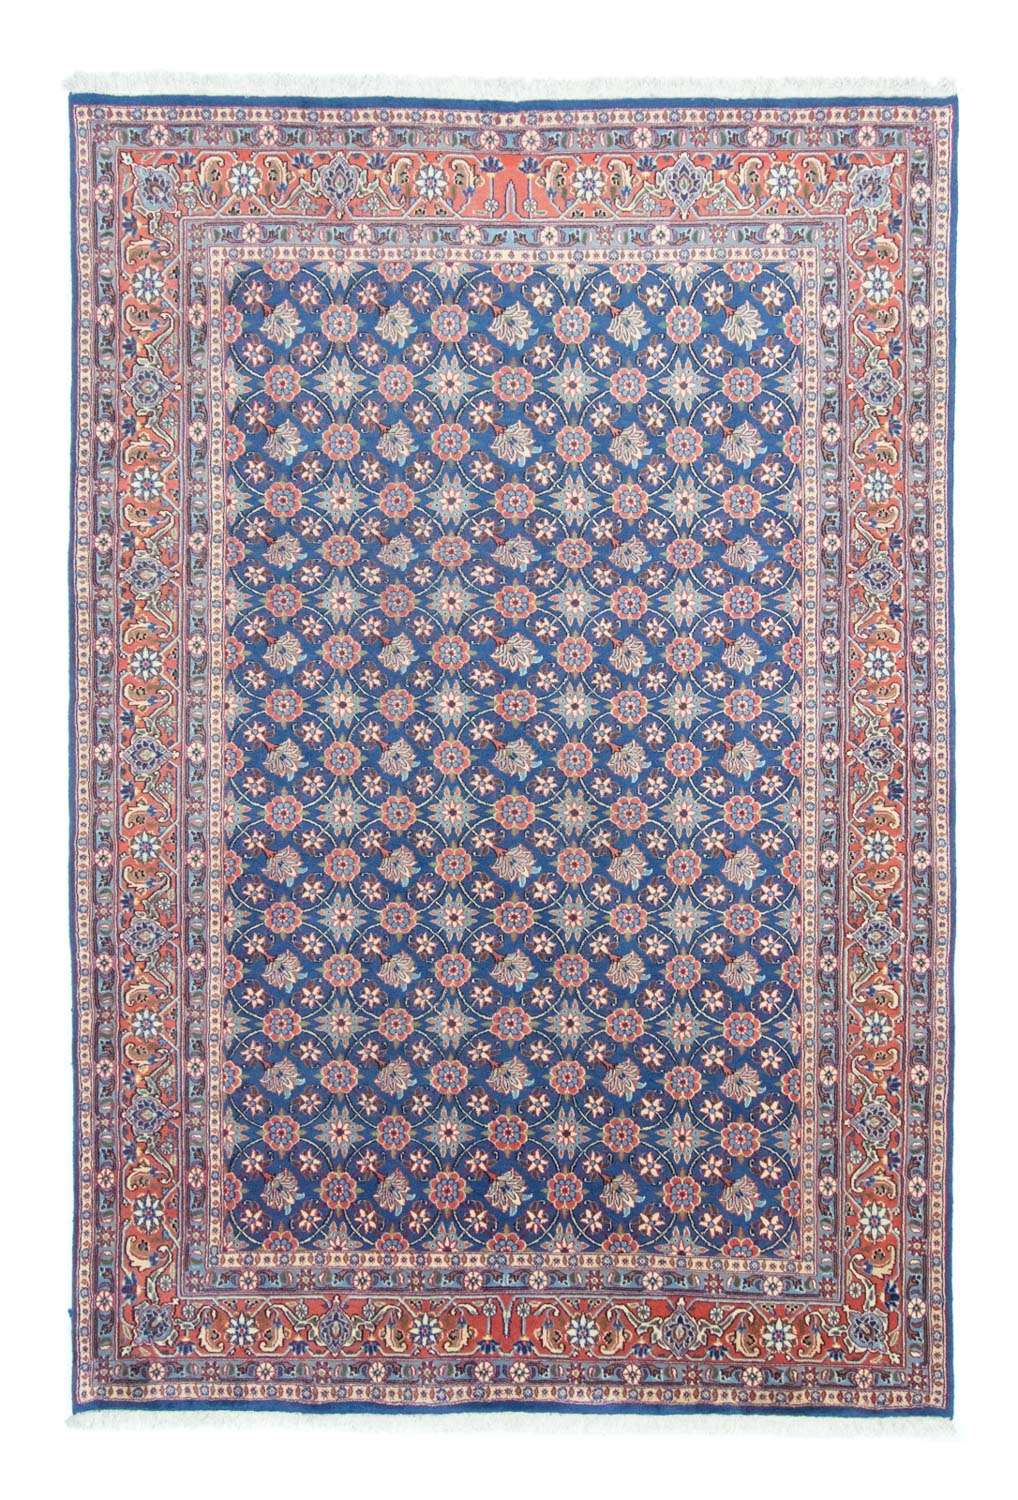 Tapis persan - Nomadic - 295 x 201 cm - bleu